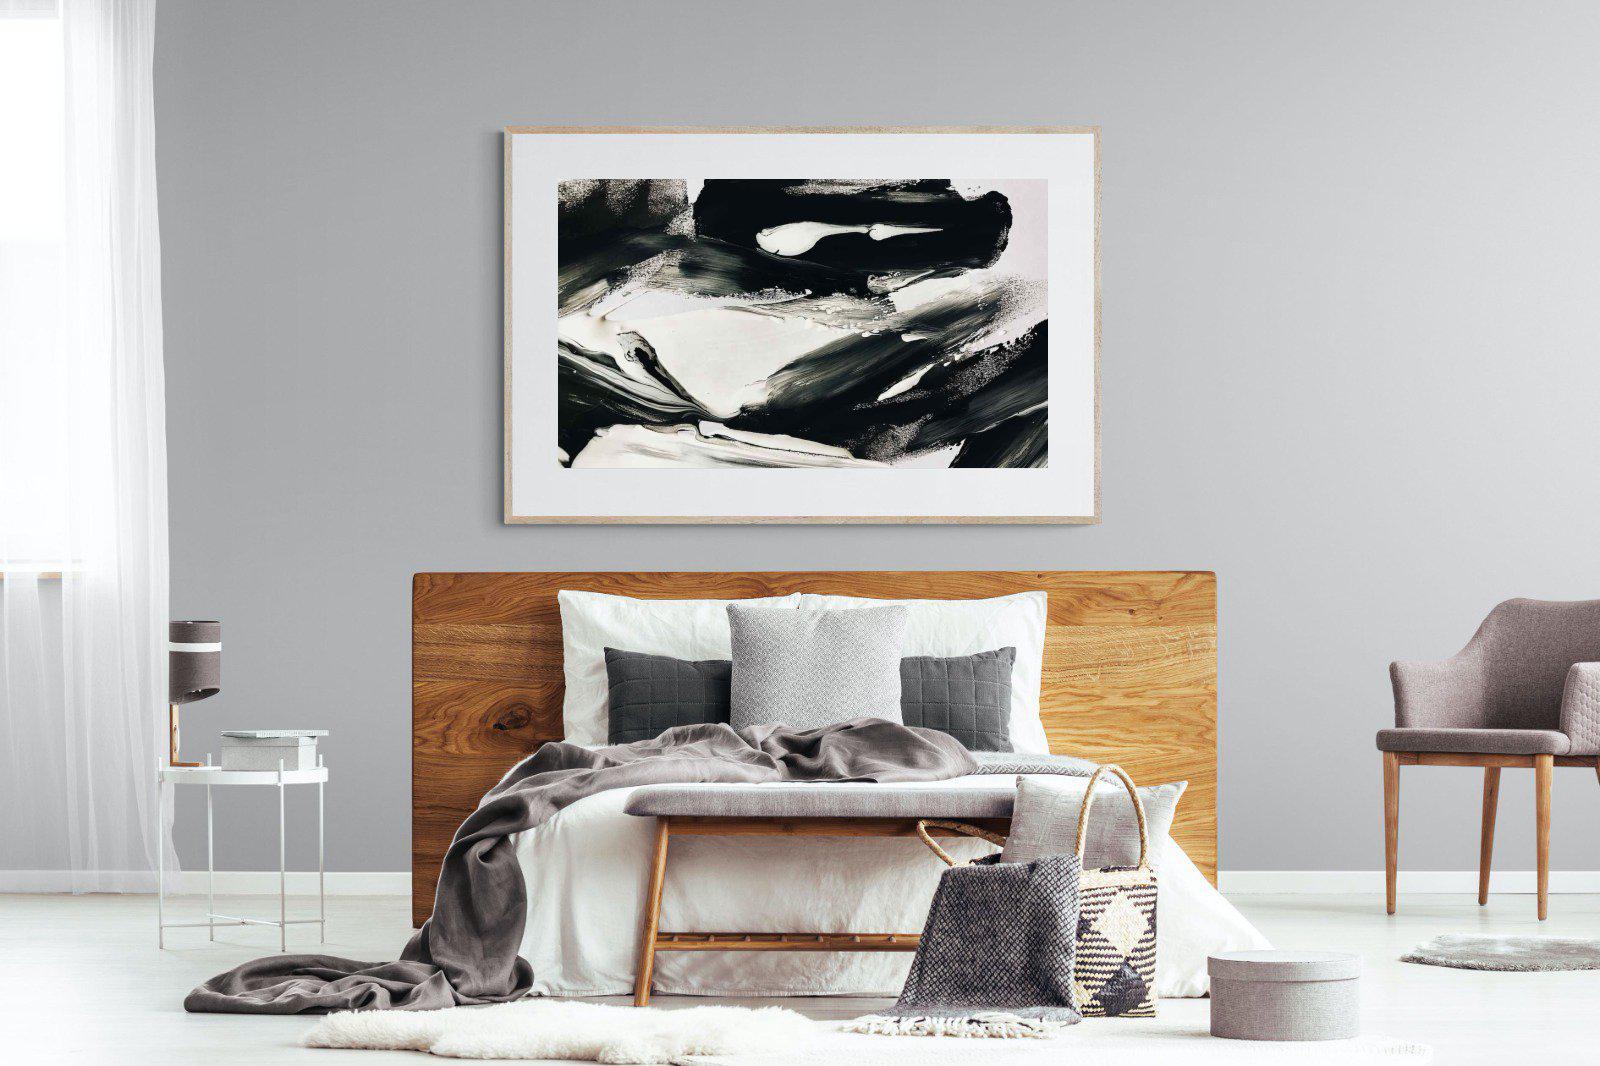 Disruption-Wall_Art-150 x 100cm-Framed Print-Wood-Pixalot